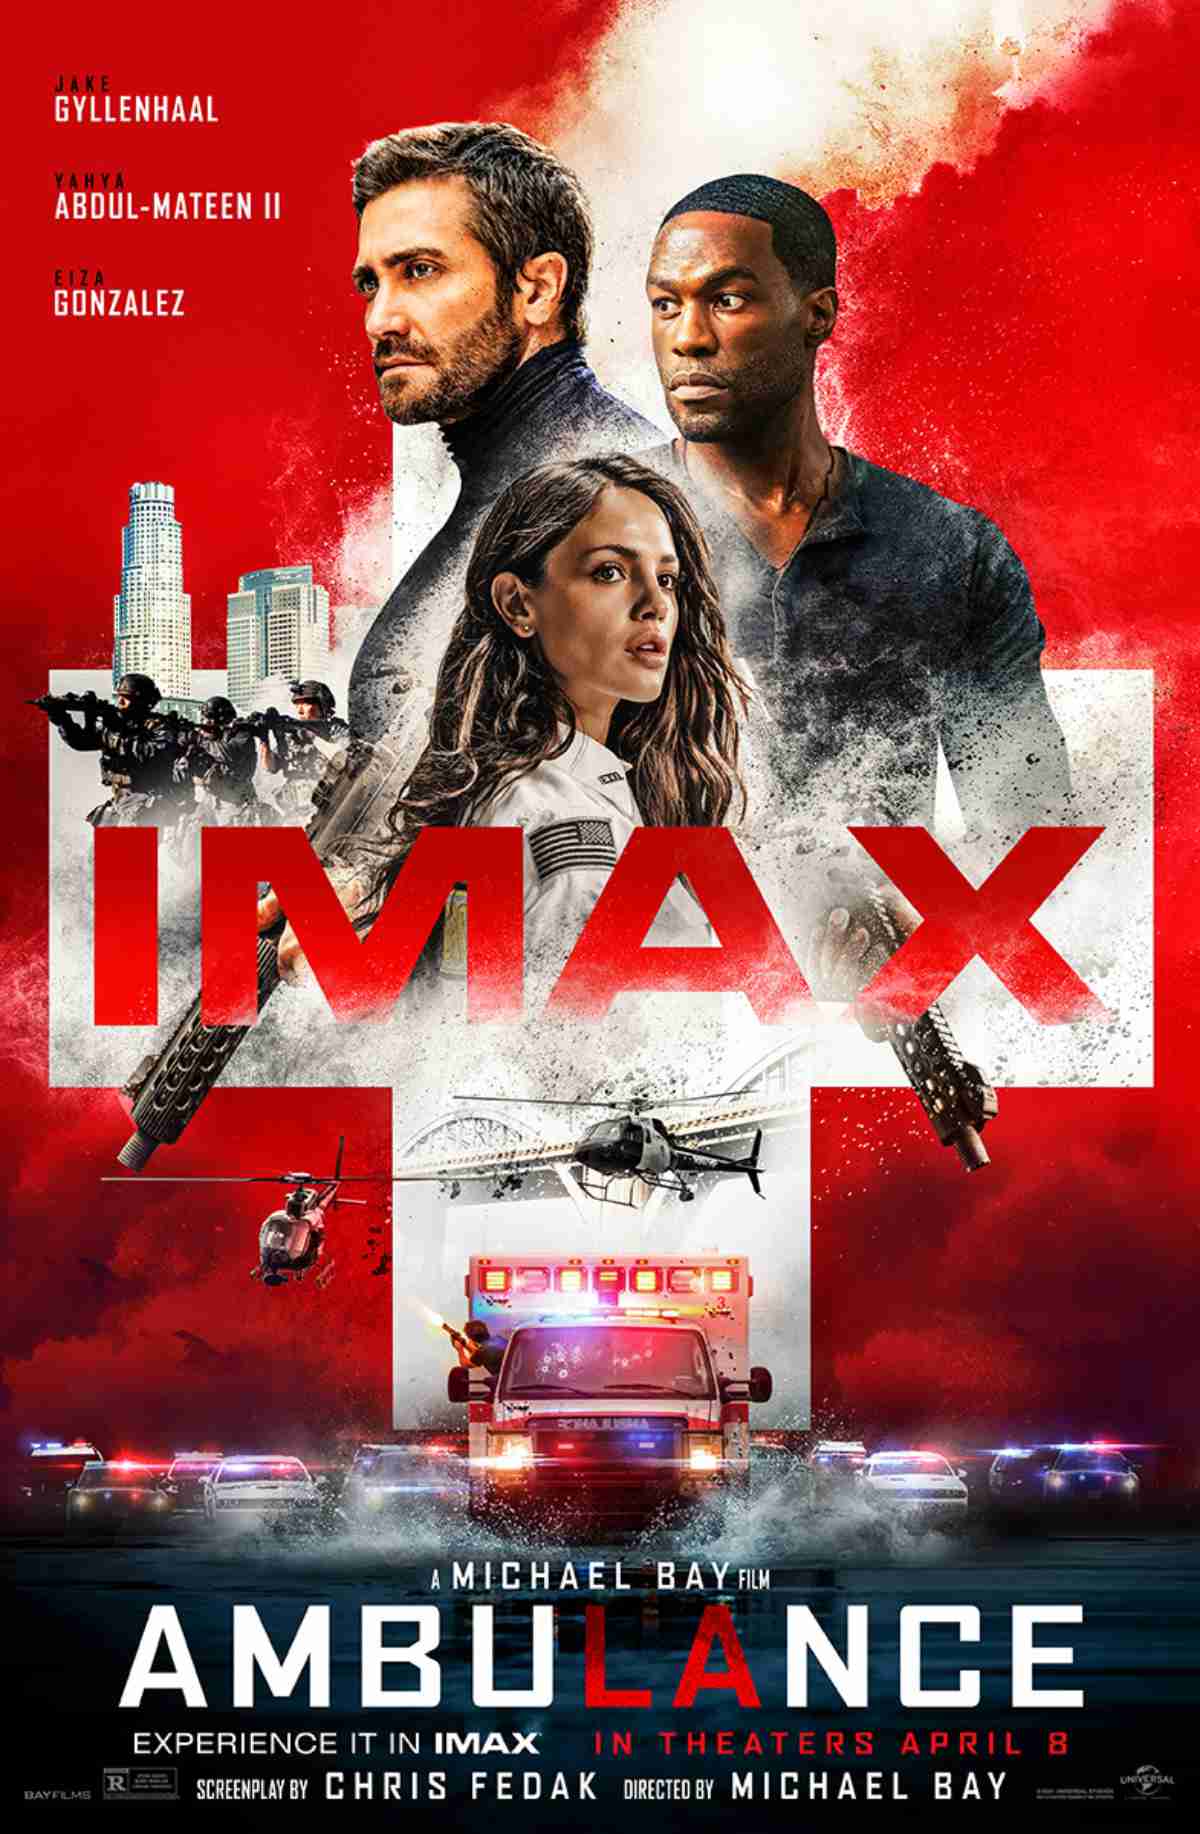 Ambulance Movie IMAX Poster